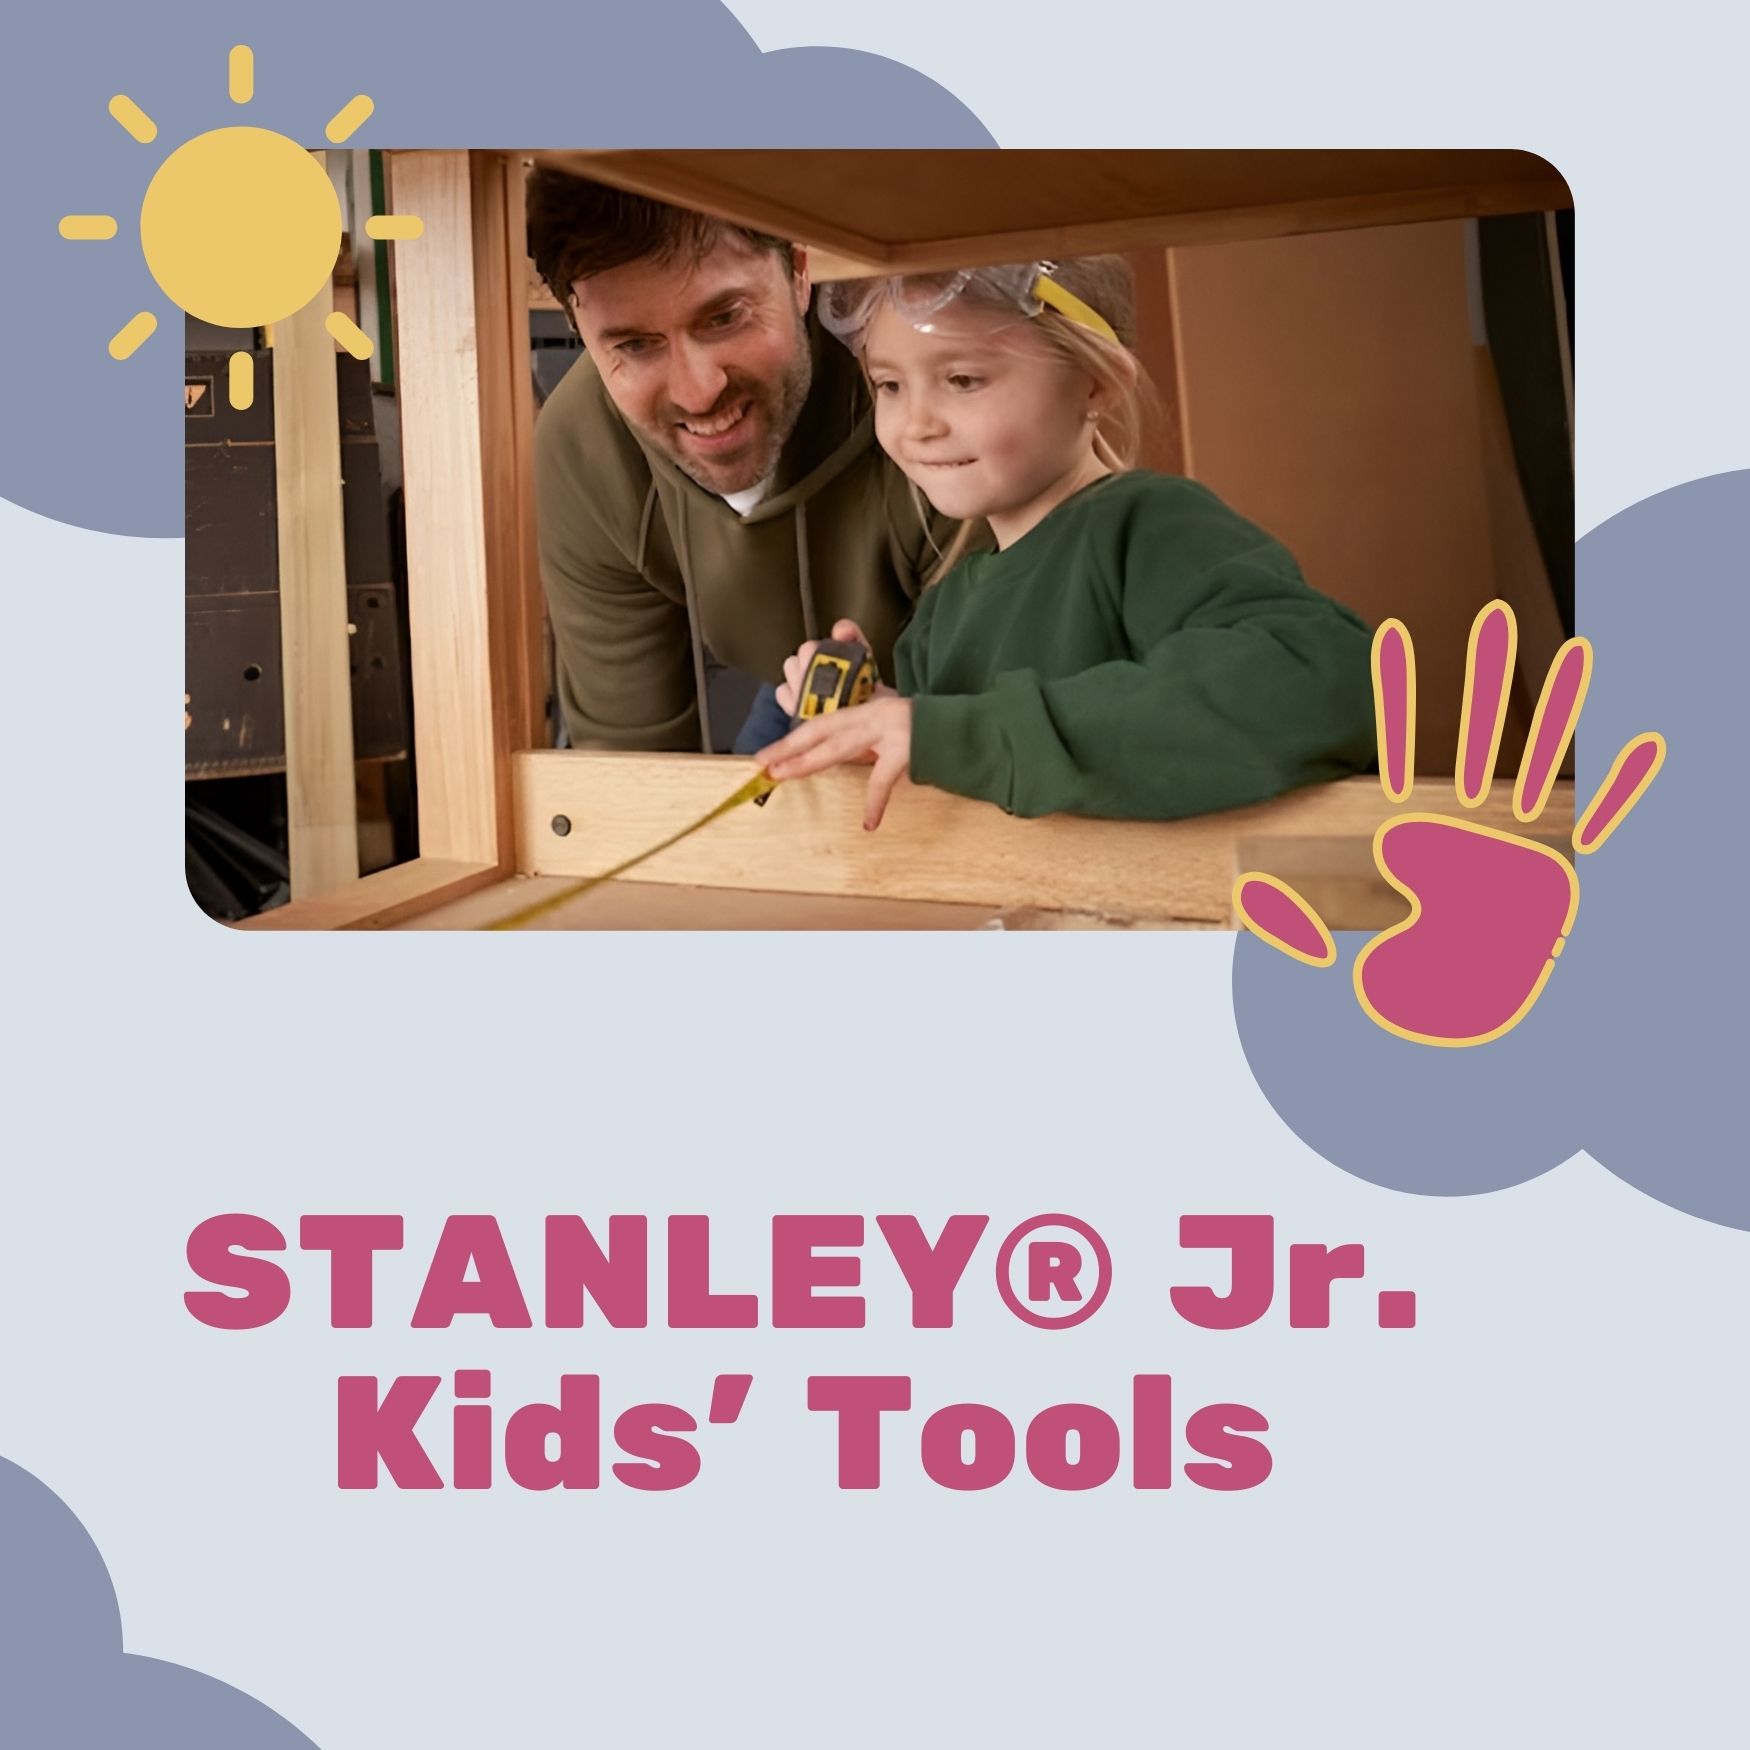 Chiến dịch “STANLEY® Jr. Kids' Tools” là gì